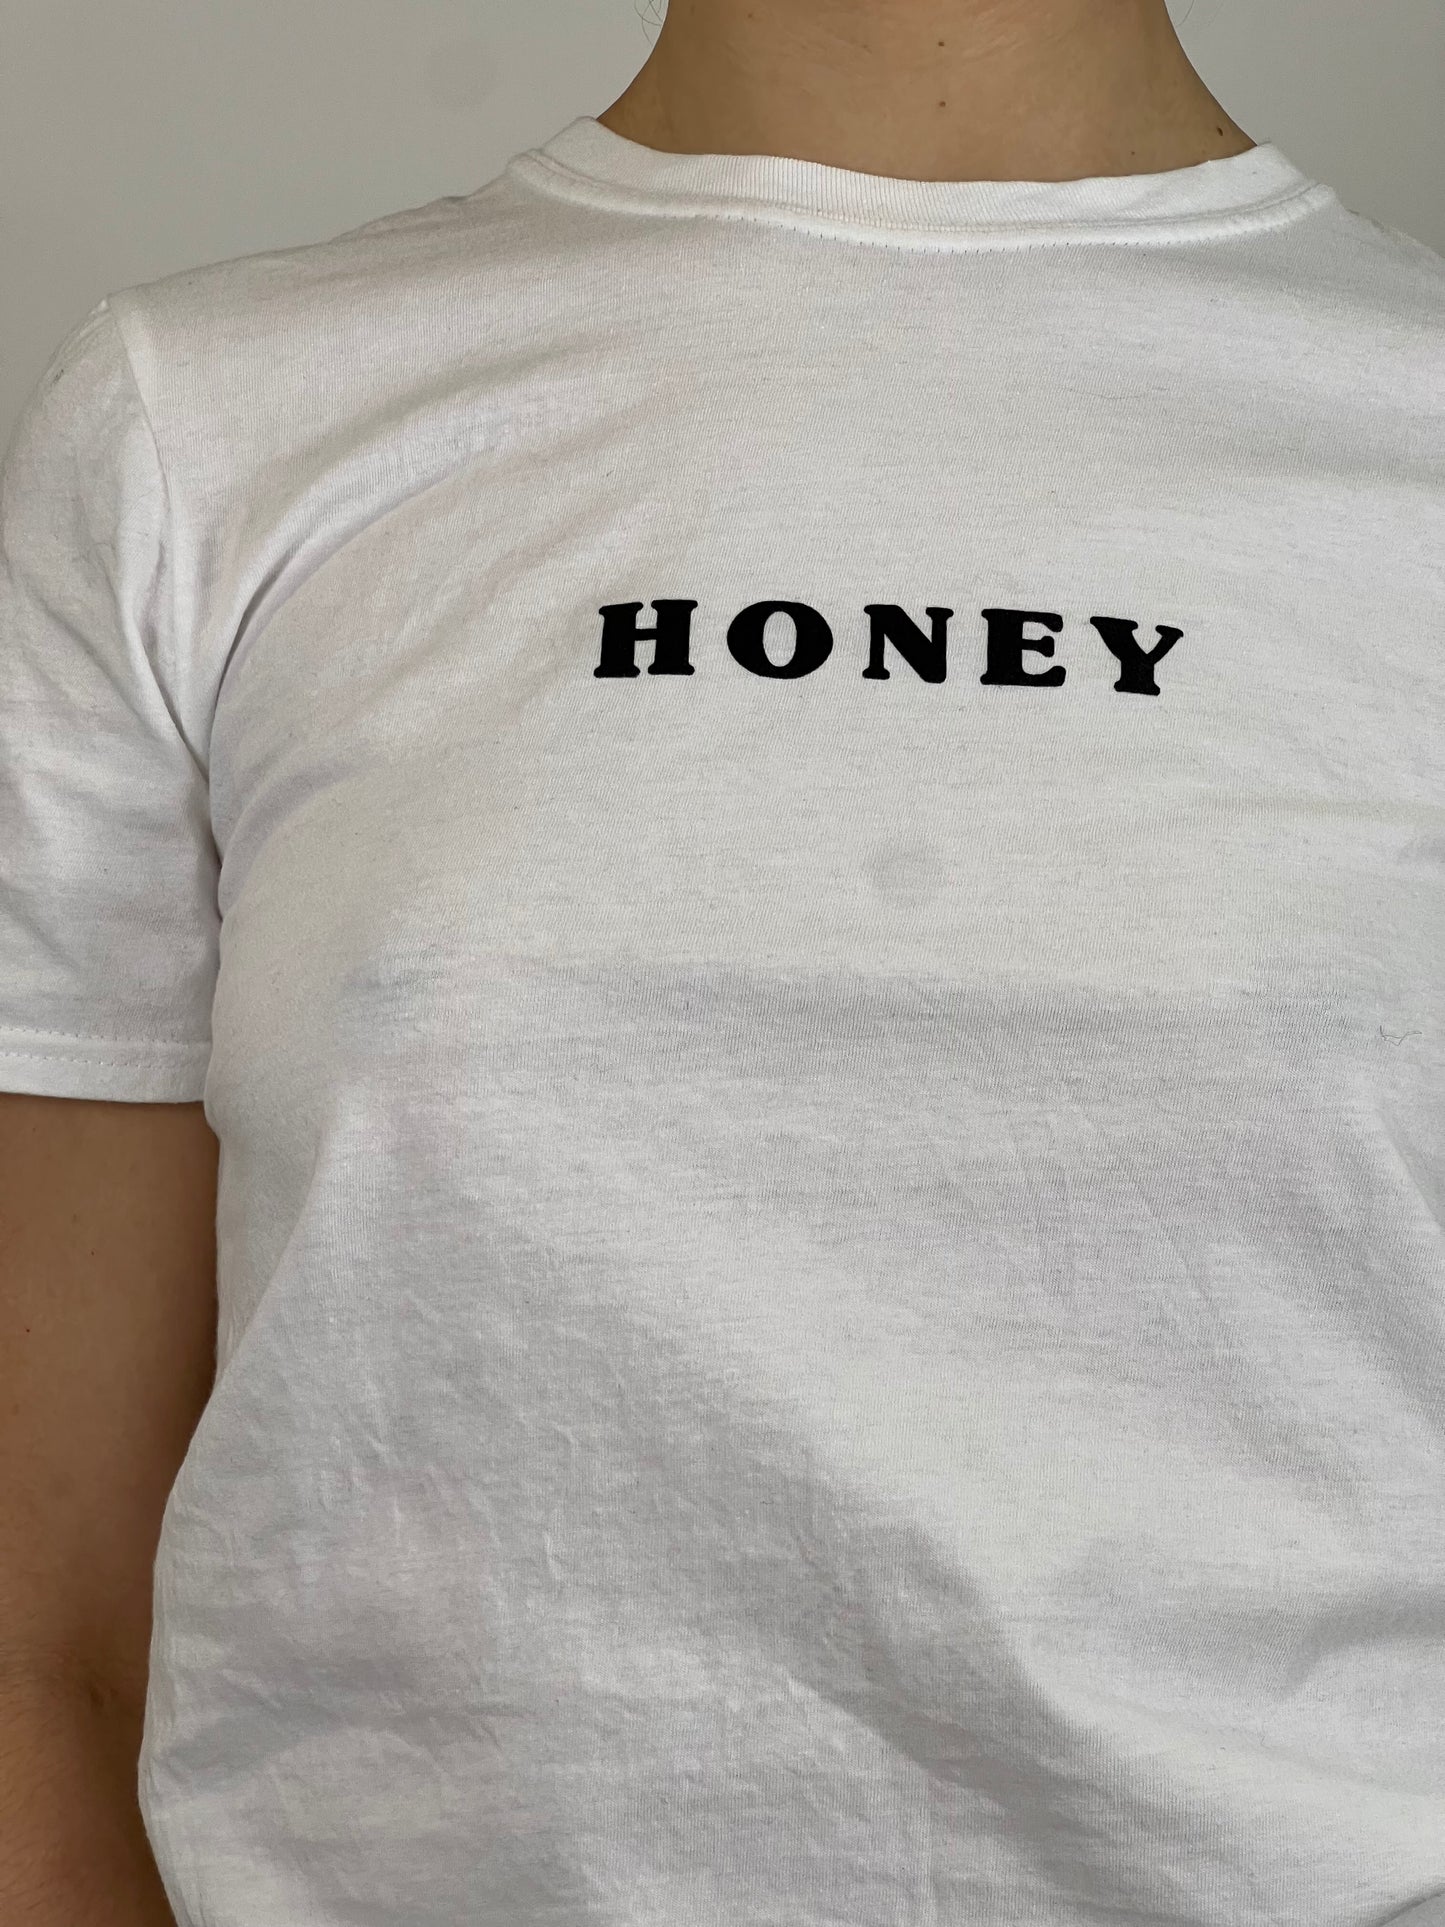 White "Honey" Tee